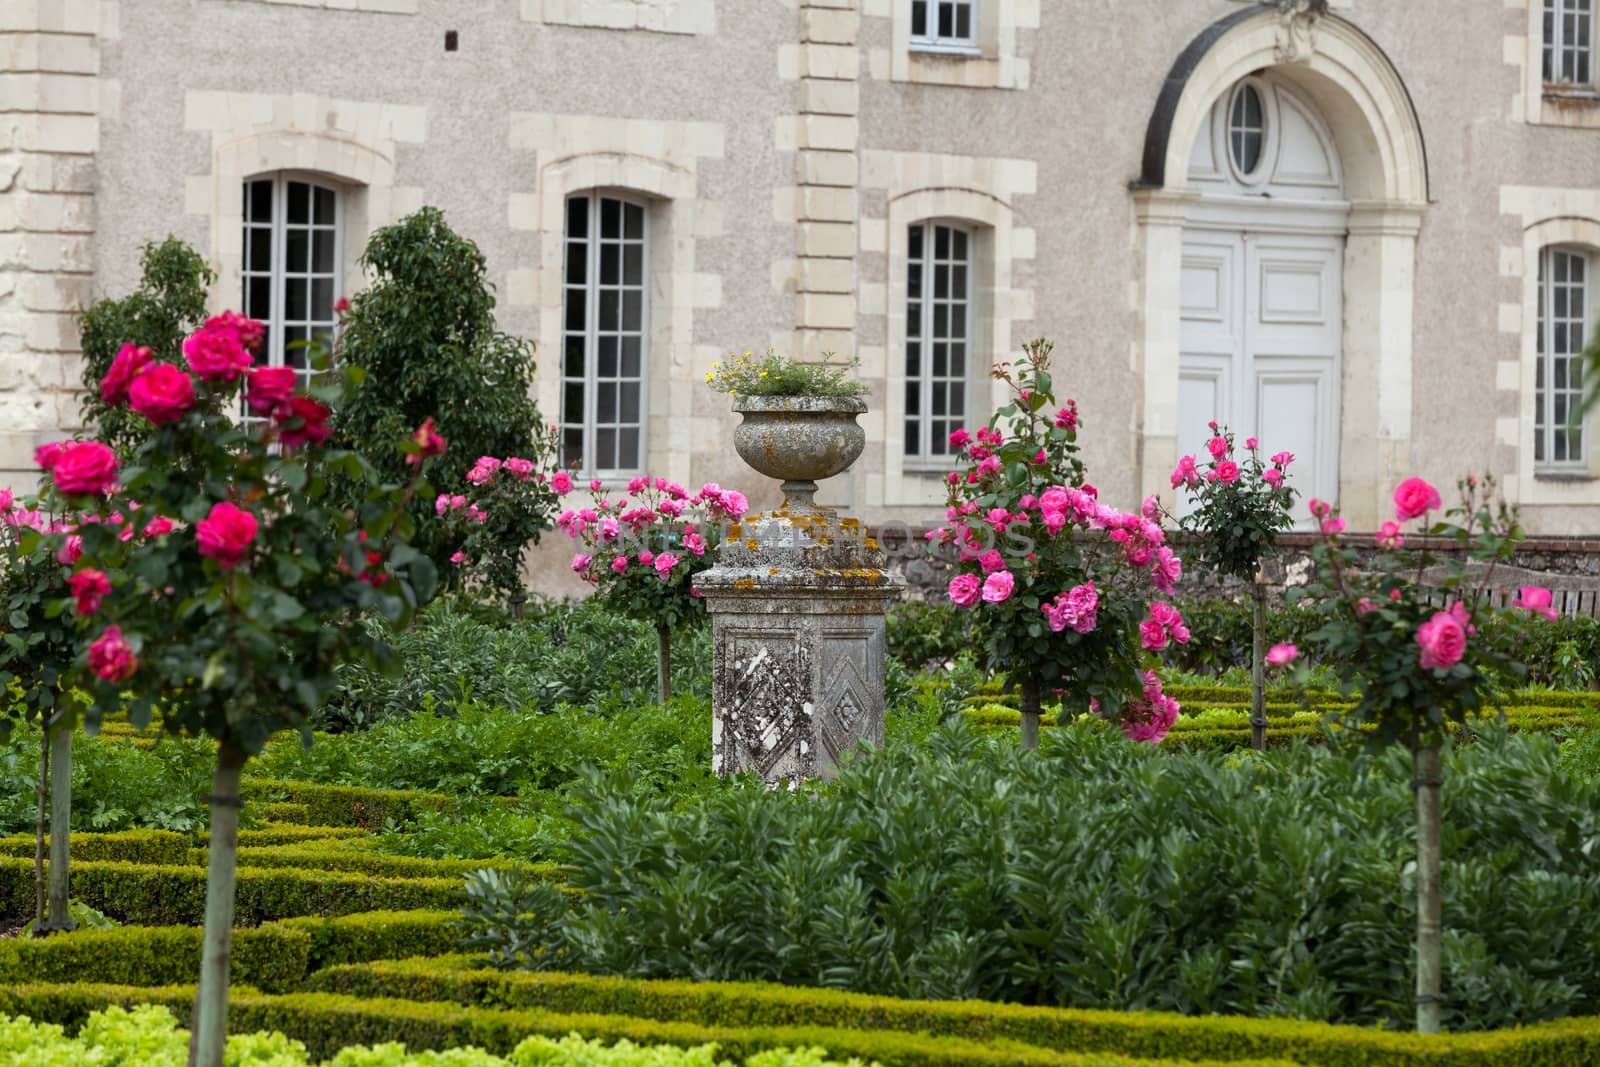 Kitchen garden in  Chateau de Villandry. Loire Valley, France 